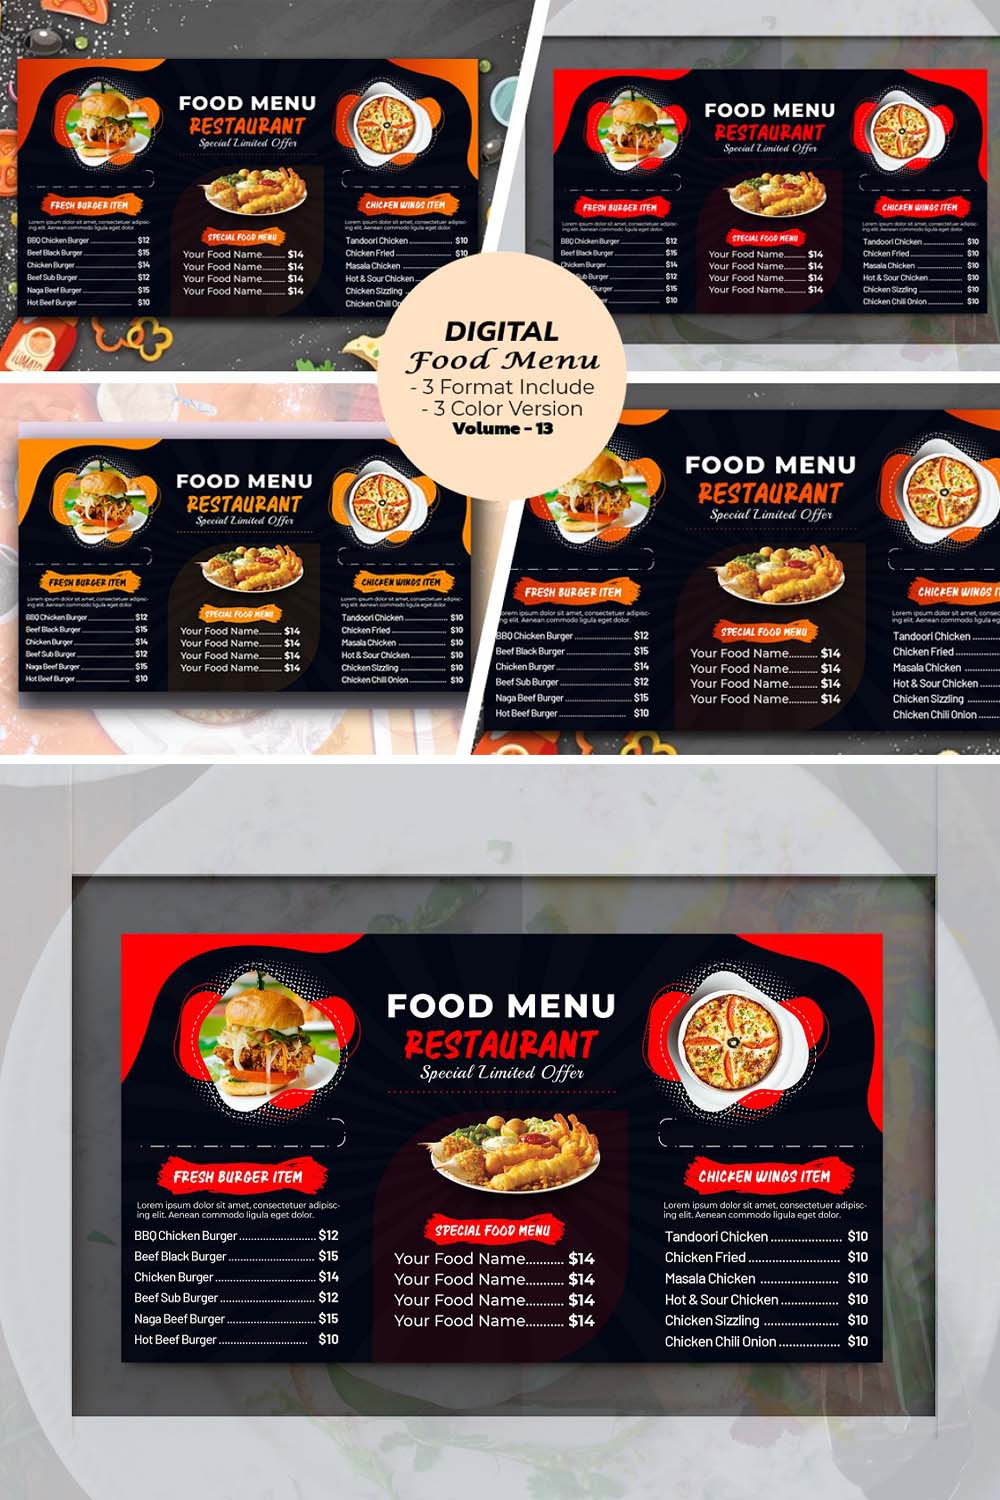 Digital Food Menu Design Template V-13 pinterest preview image.